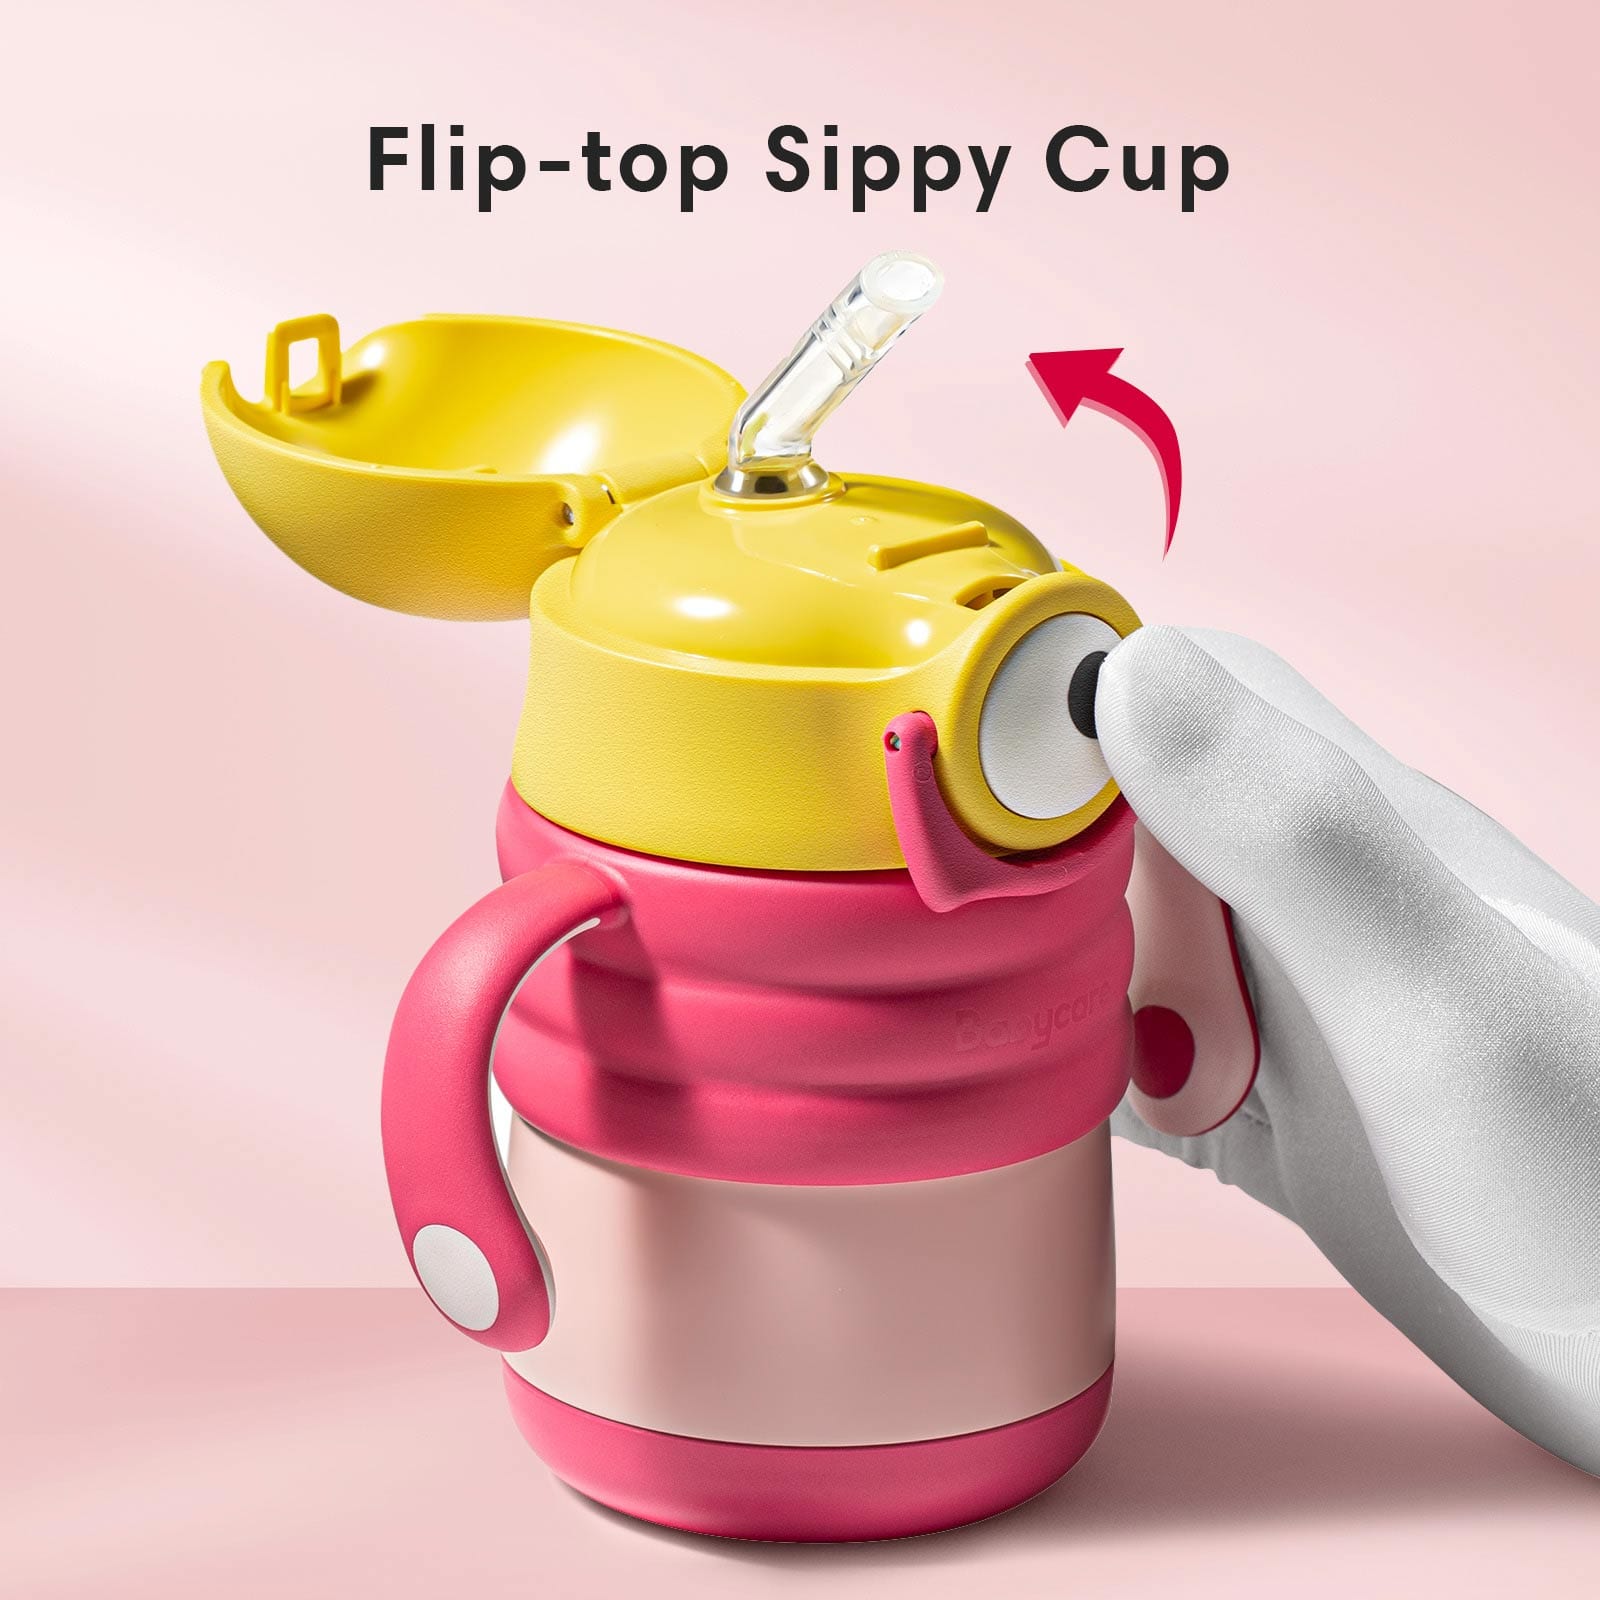 Kids Water Bottles & Sip Cups, Skip Hop